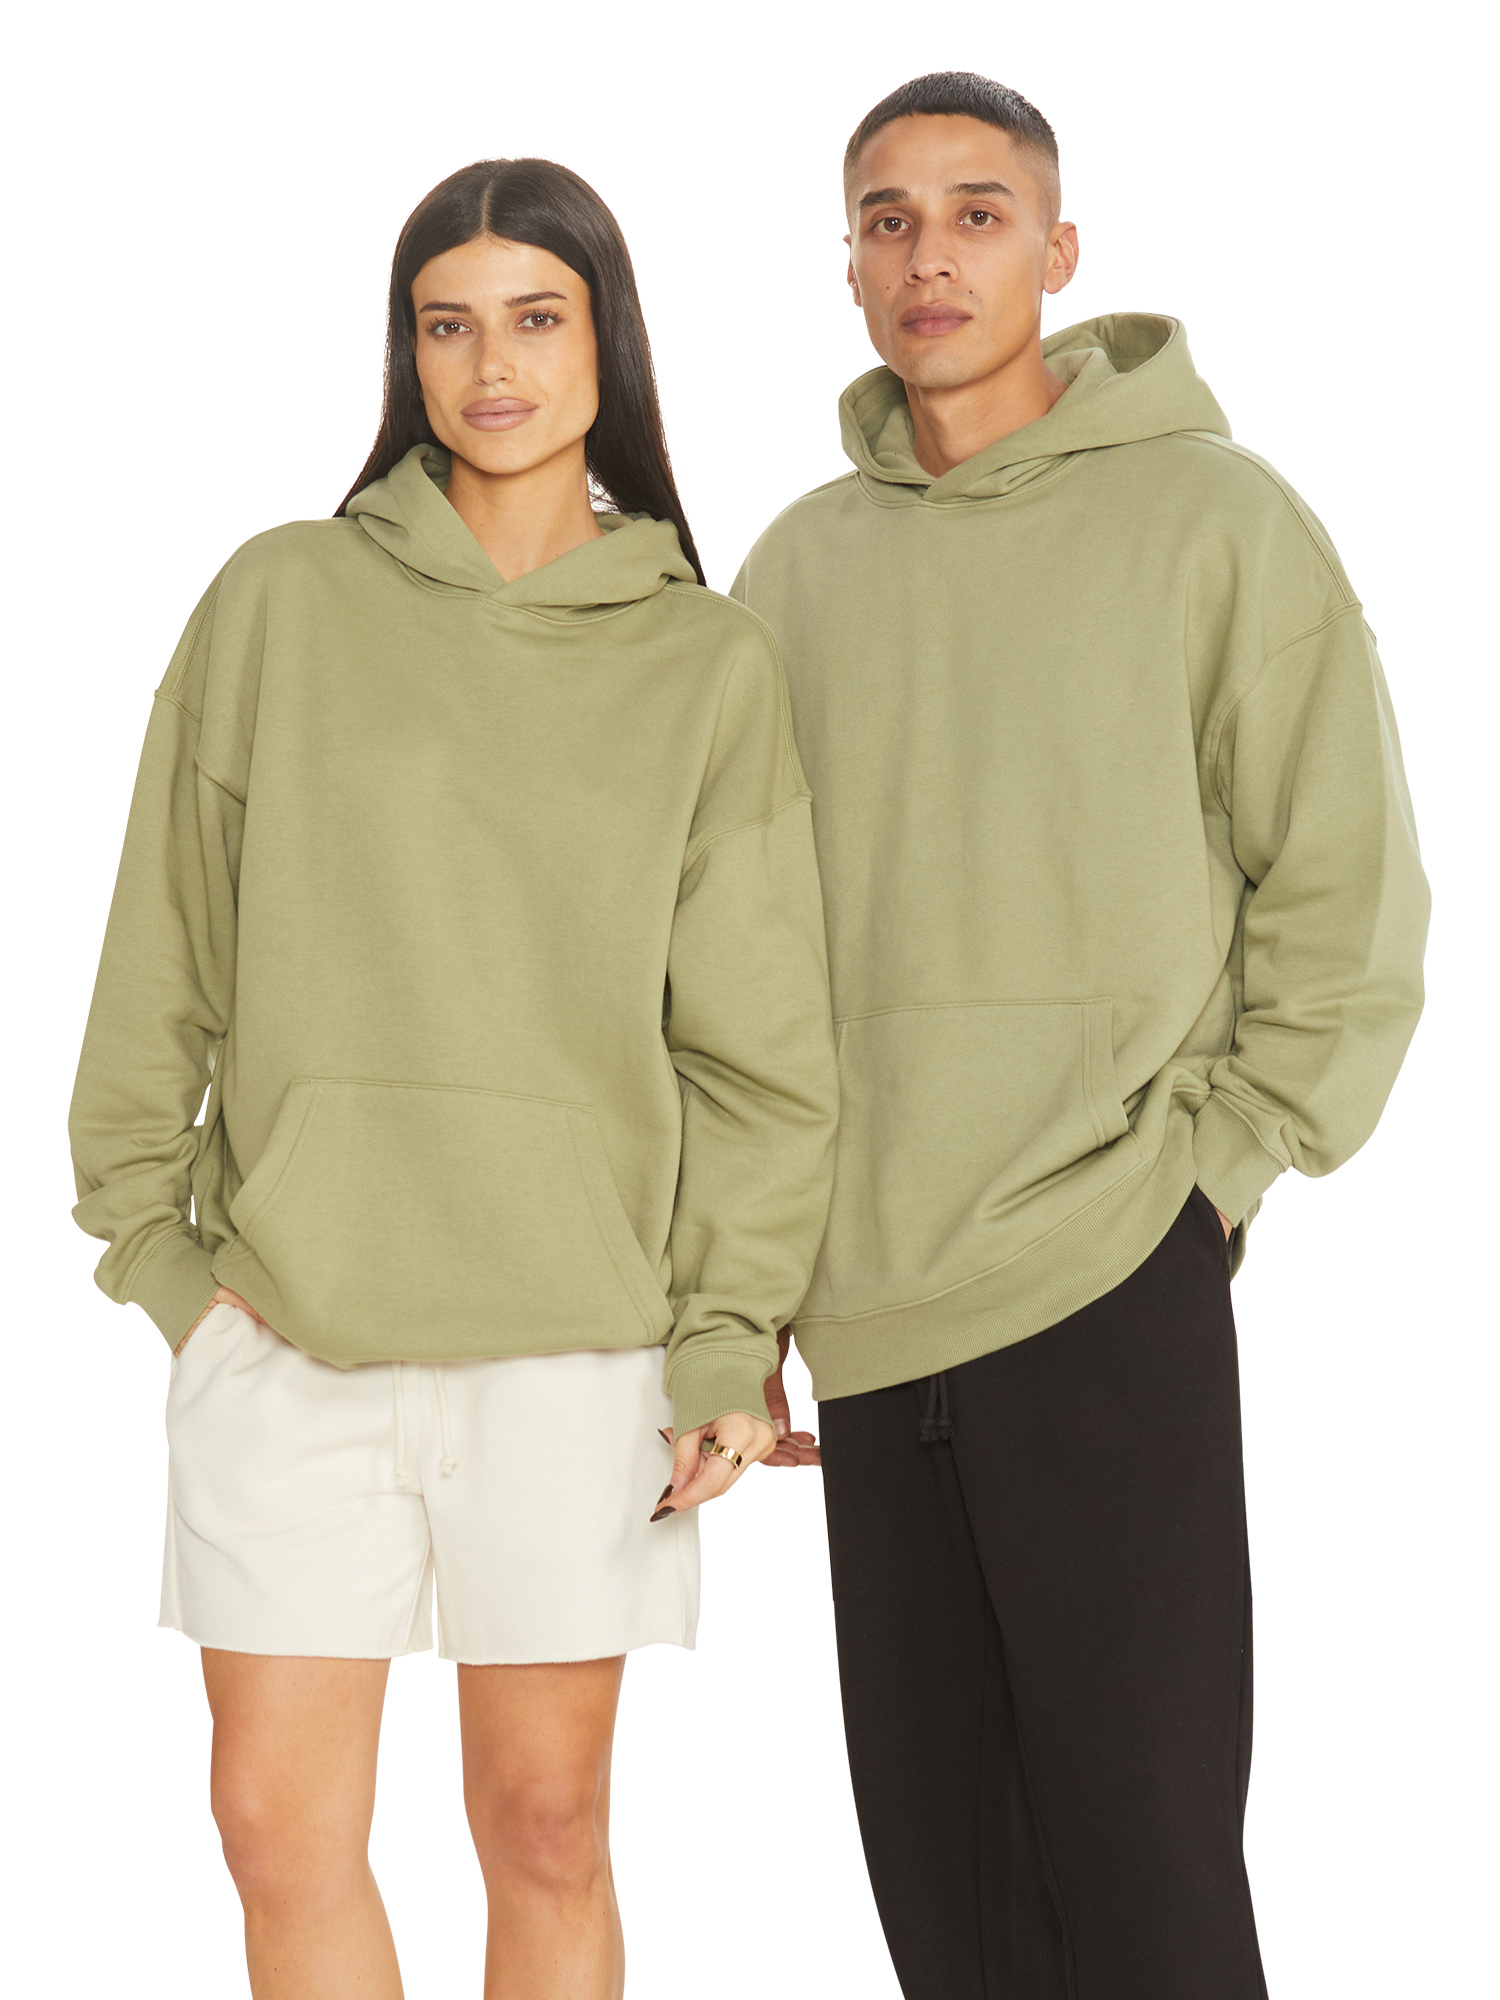 No Boundaries All Gender Fleece Hoodie Sweatshirt, Men's Sizes XS - 5XL - image 1 of 5